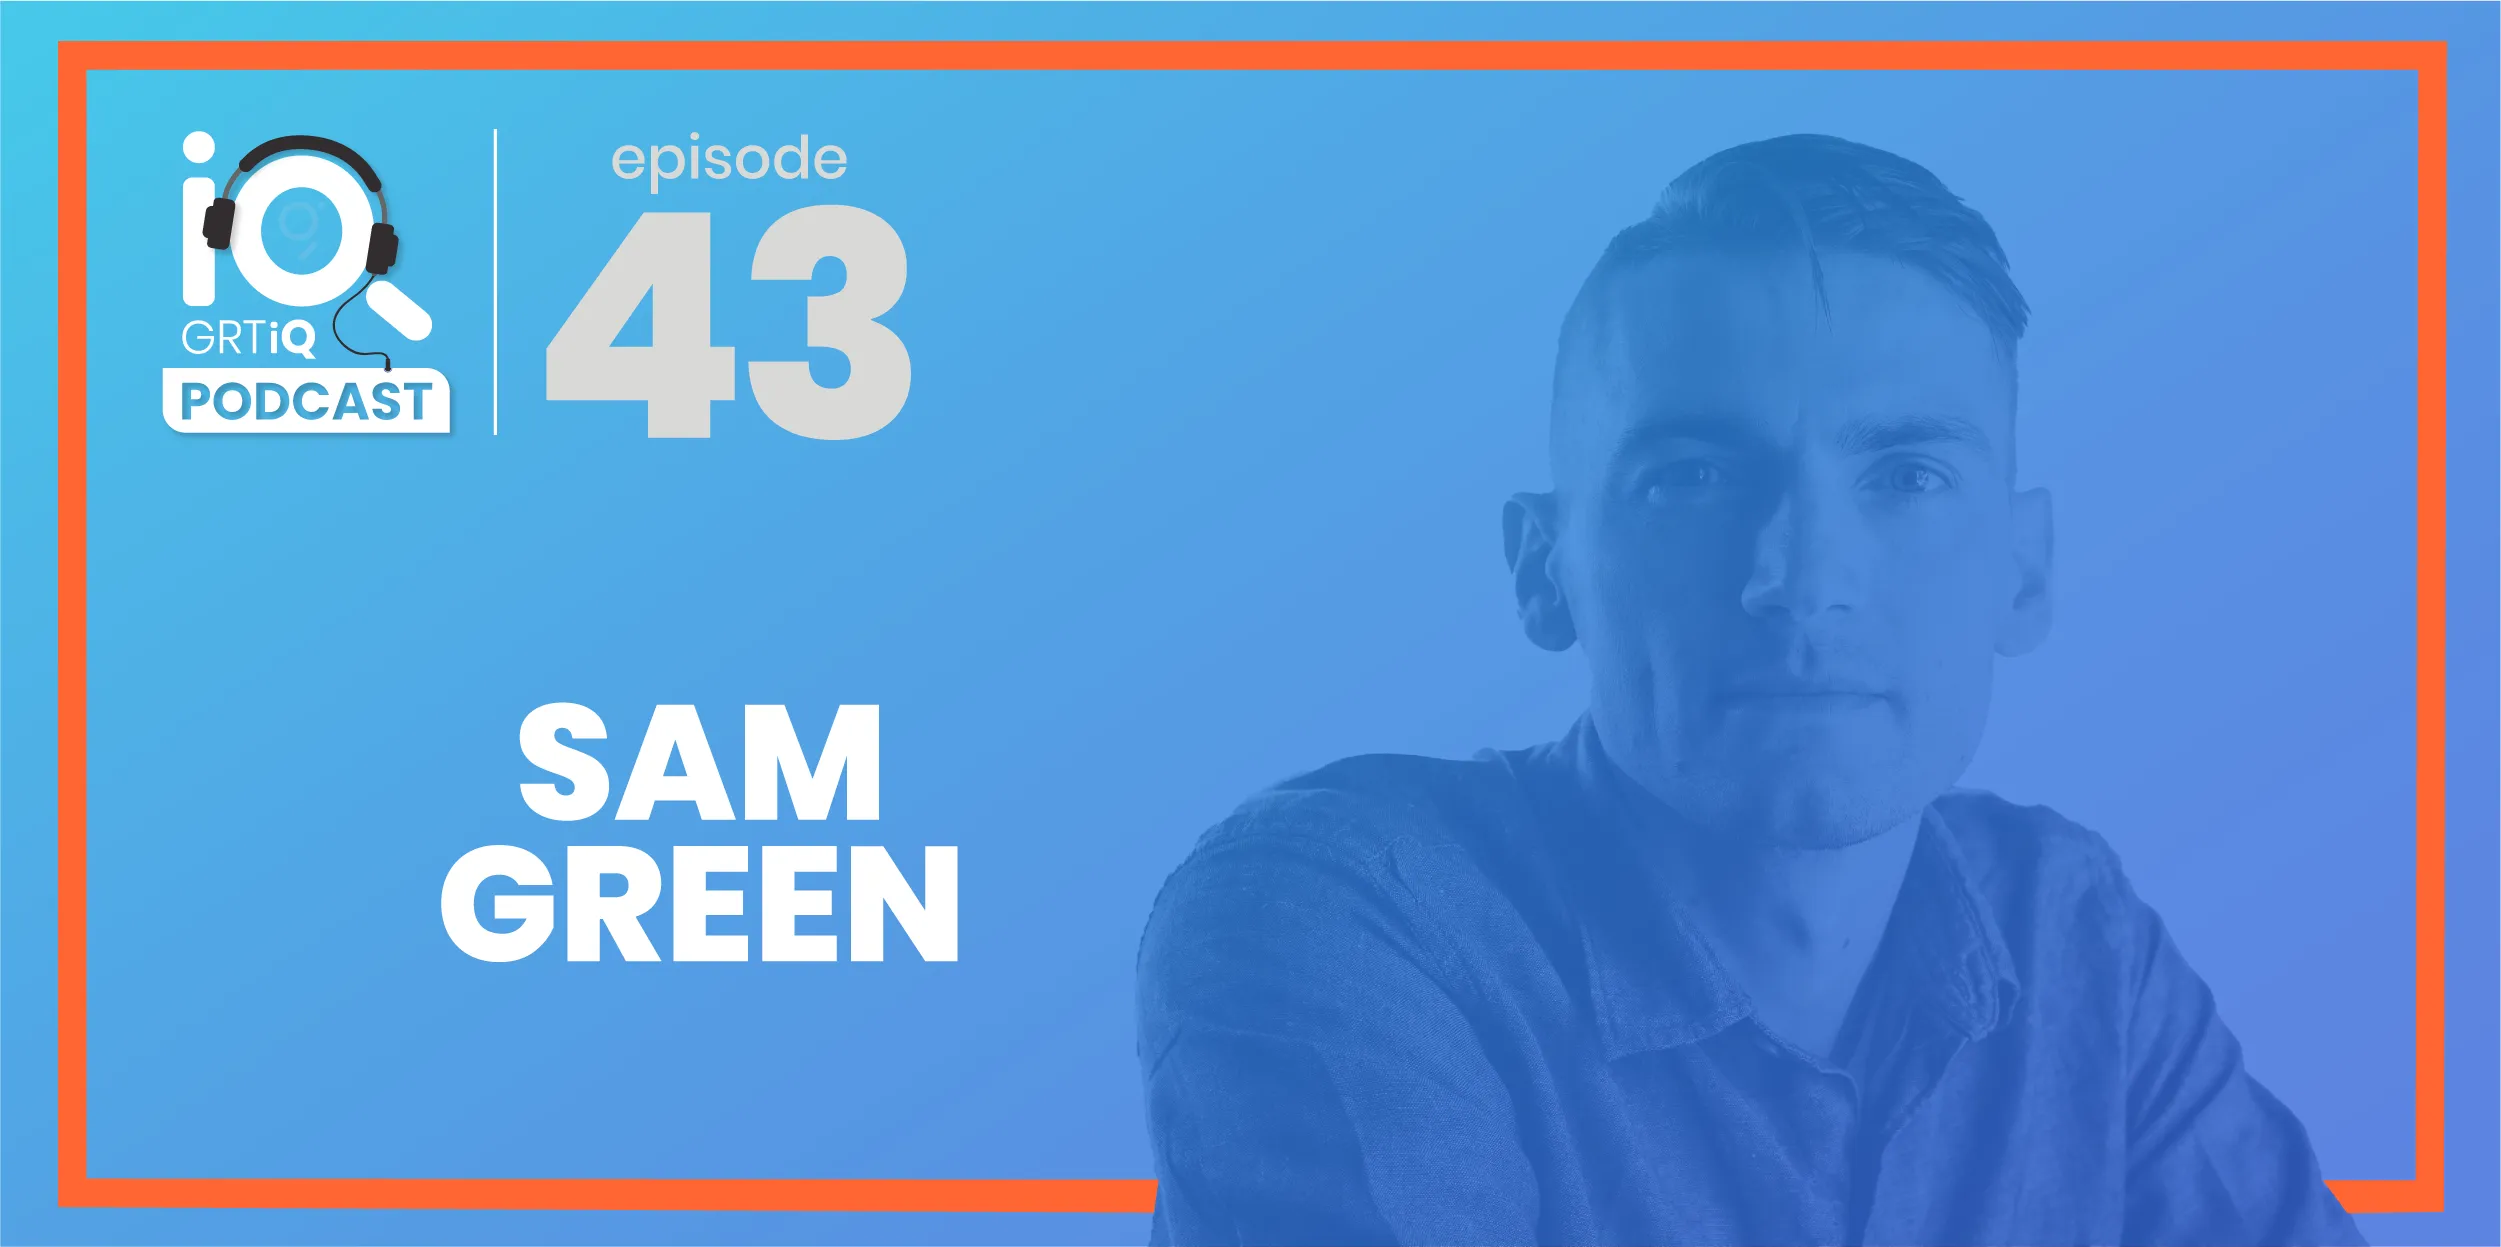 GRTiQ podcast episode 43 Sam Green